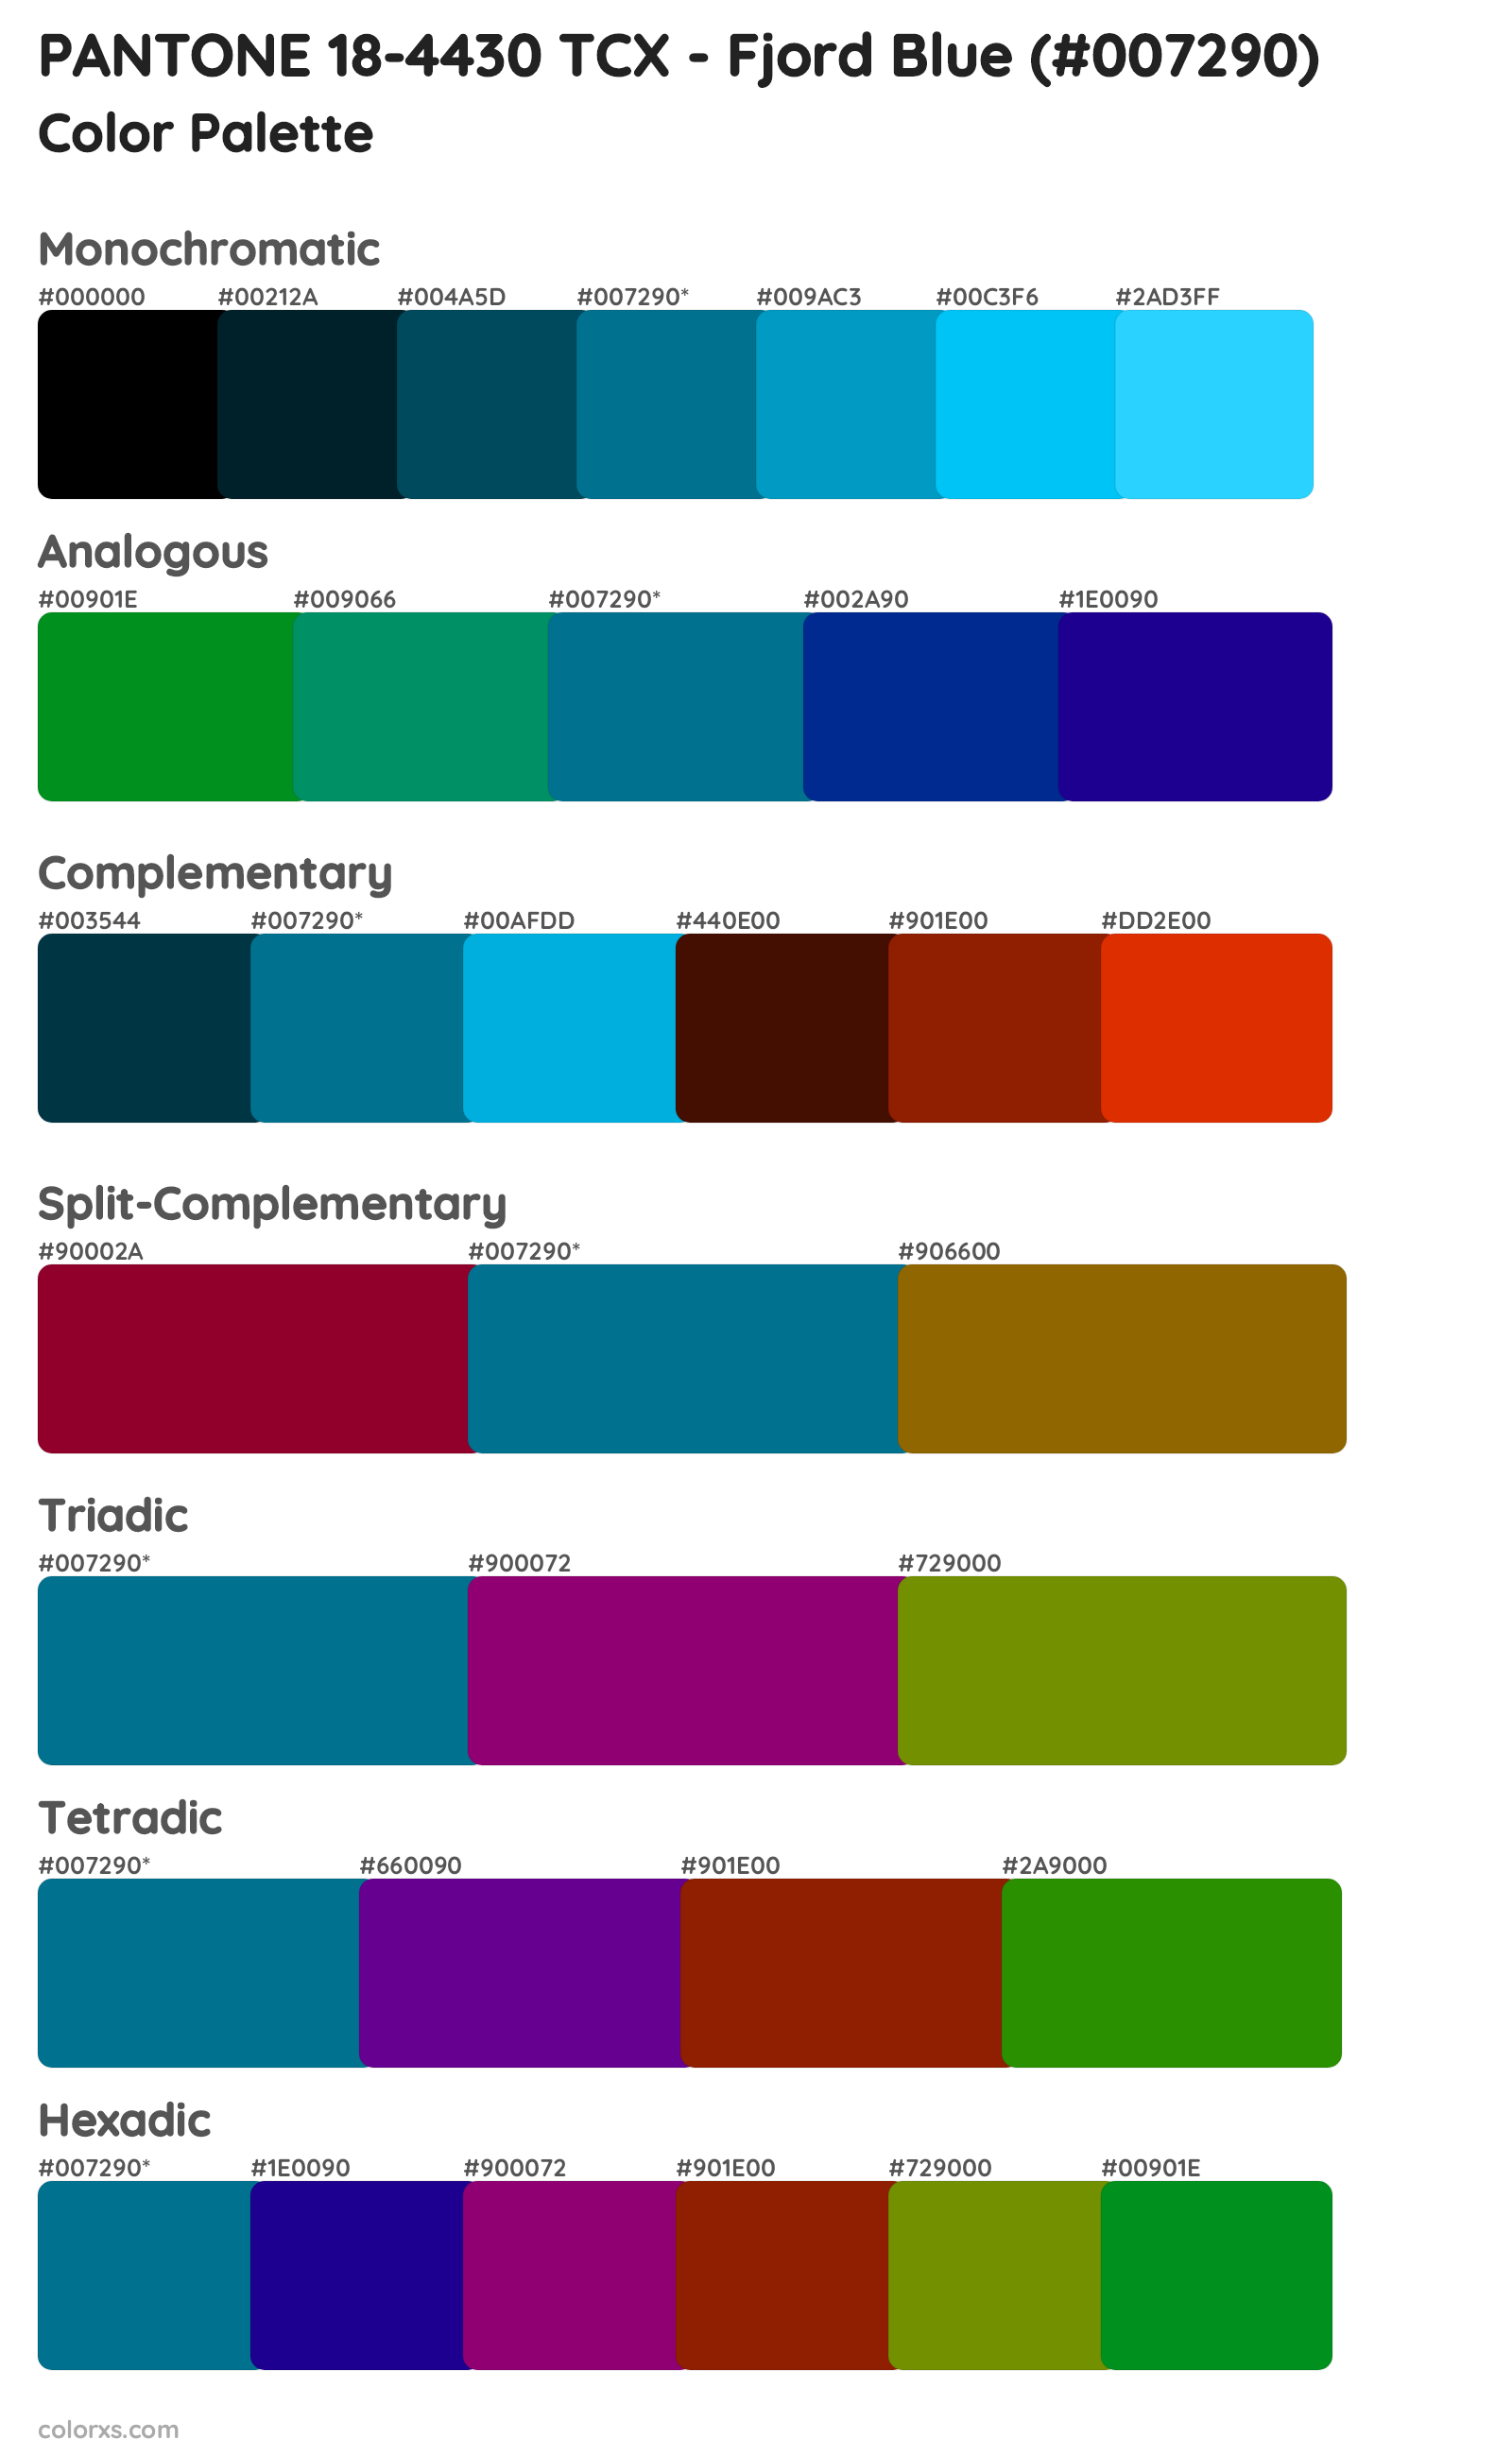 PANTONE 18-4430 TCX - Fjord Blue Color Scheme Palettes